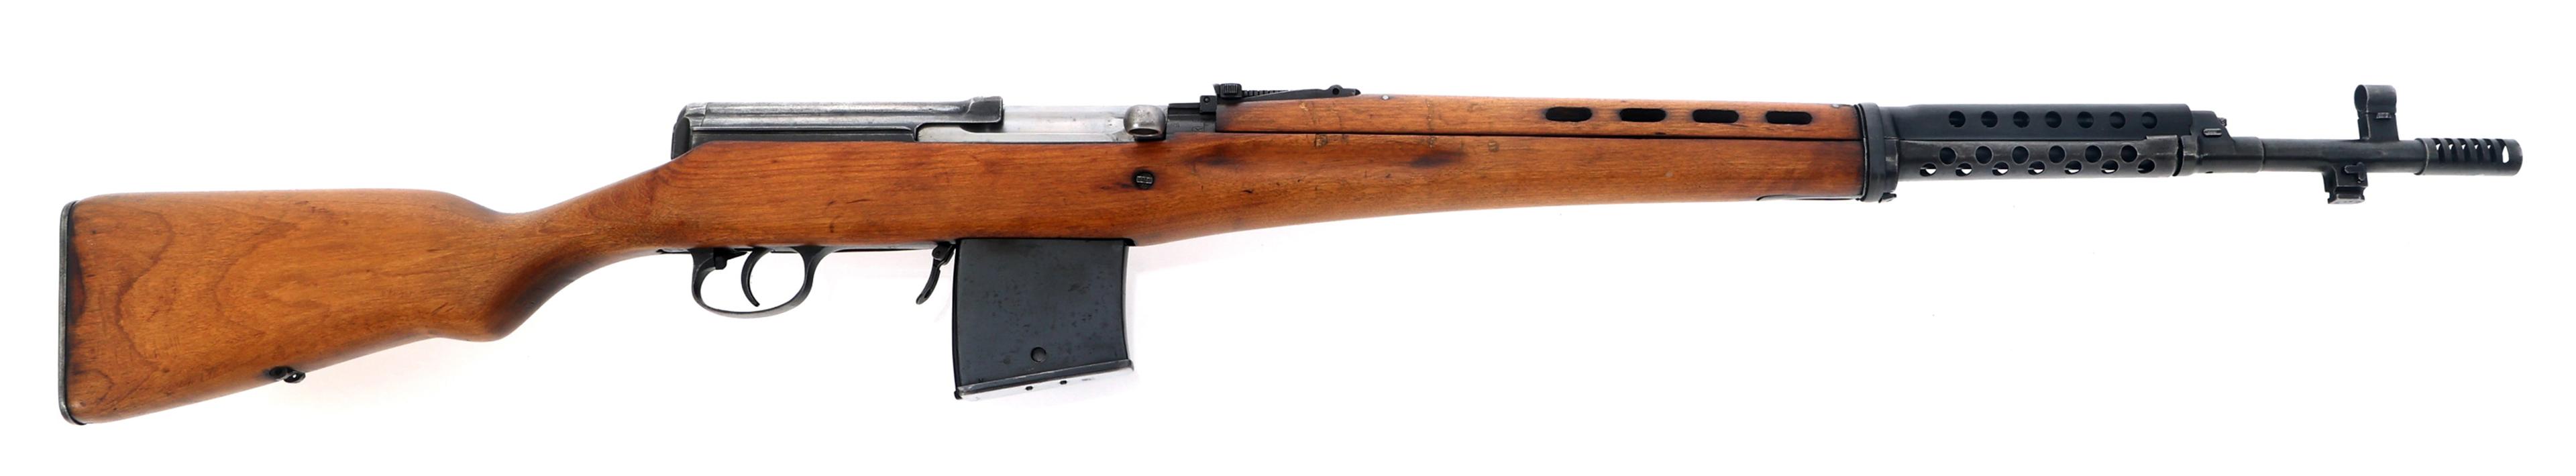 WWII RUSSIAN IZHEVSK MODEL SVT-40 7.62mm CAL RIFLE